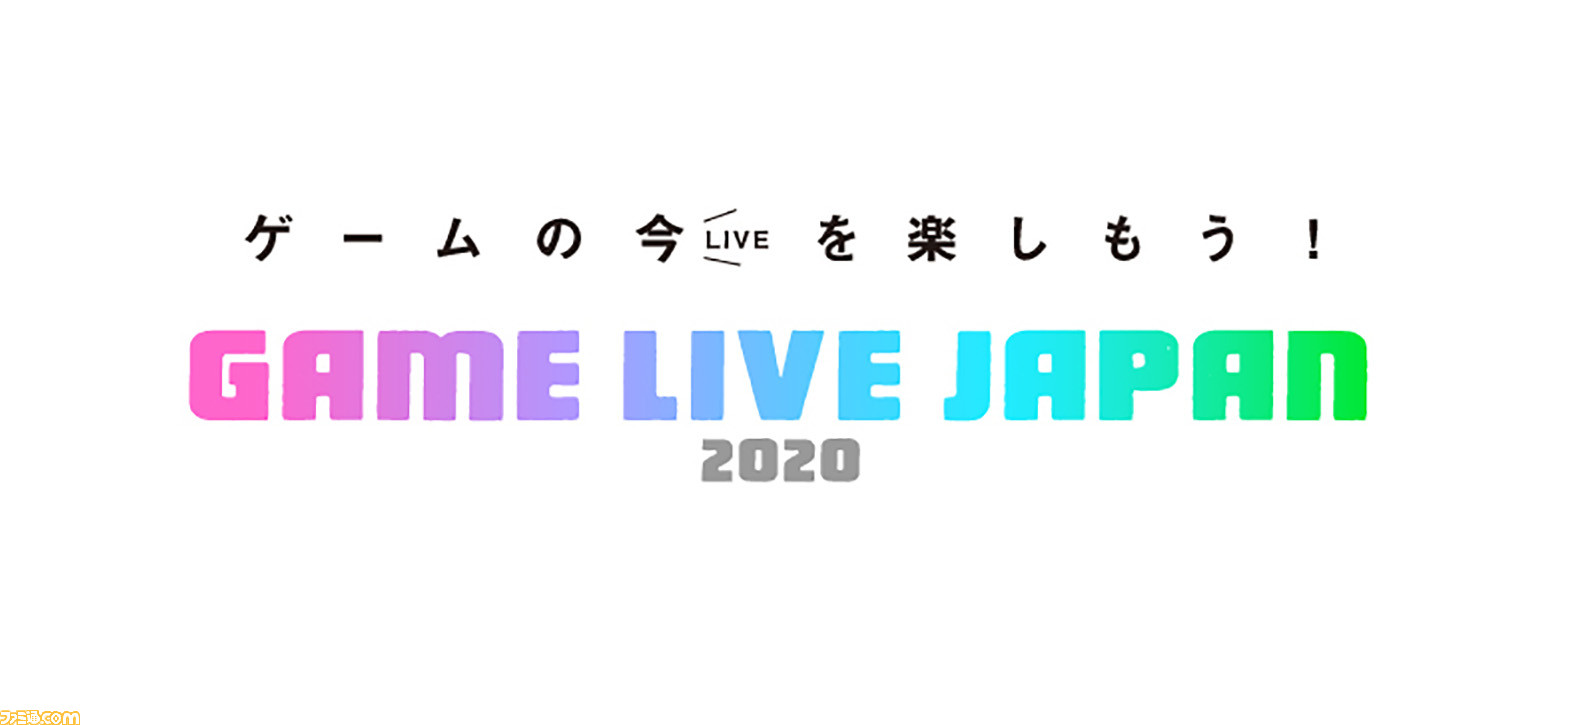 Game Live Japan スクープや新情報を発表するゲーム情報番組が9 25 27で配信決定 ファミ通 電撃でおなじみの声優 タレントに加え ガーリィレコード マヂカルラブリーが出演 ゲーム エンタメ最新情報のファミ通 Com